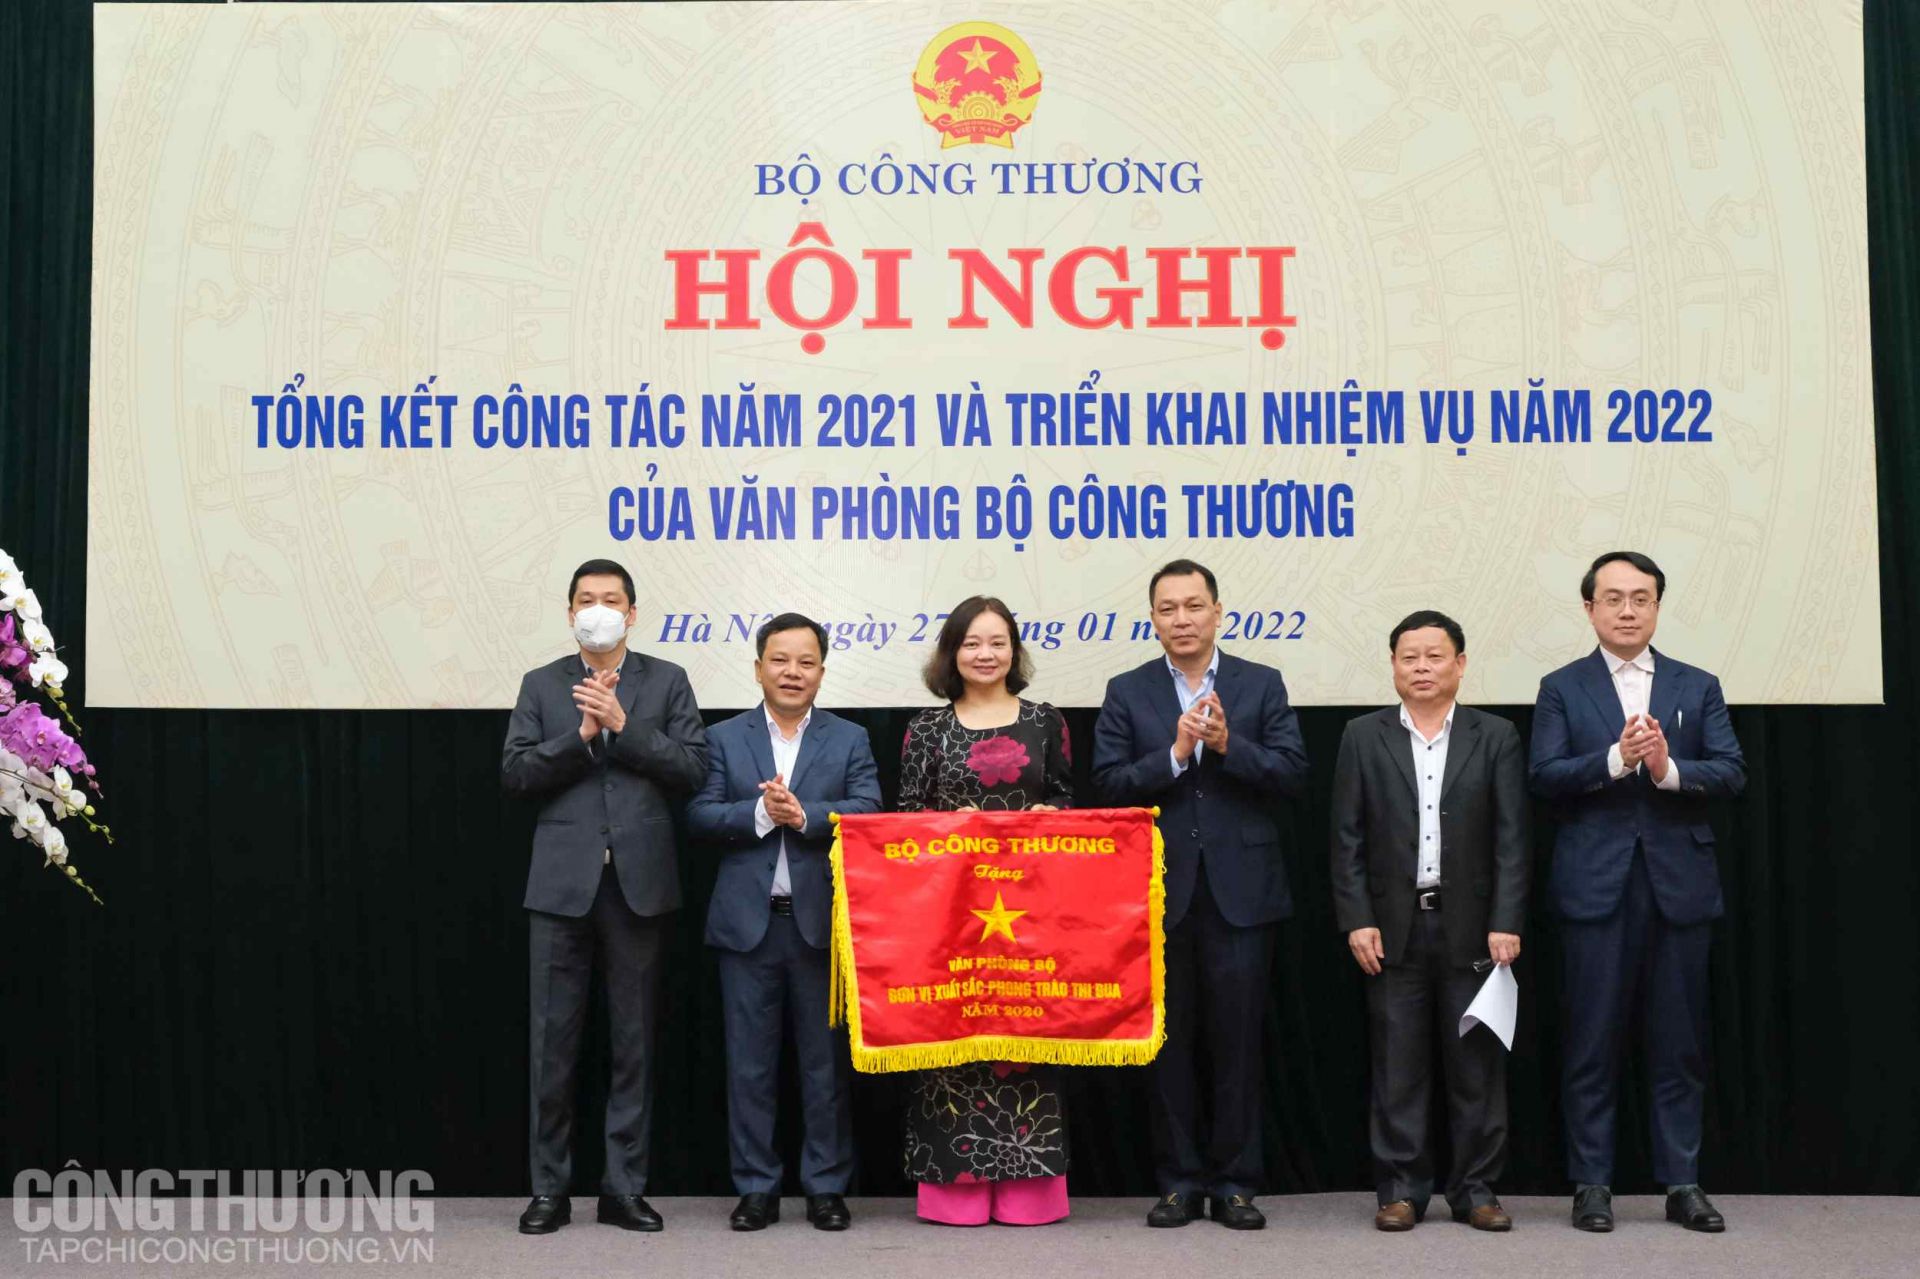 Thứ trưởng Đặng Hoàng An thay mặt Ban cán sự Đảng và lãnh đạo Bộ Công Thương trao tặng cờ thi đua xuất sắc cho Văn phòng Bộ